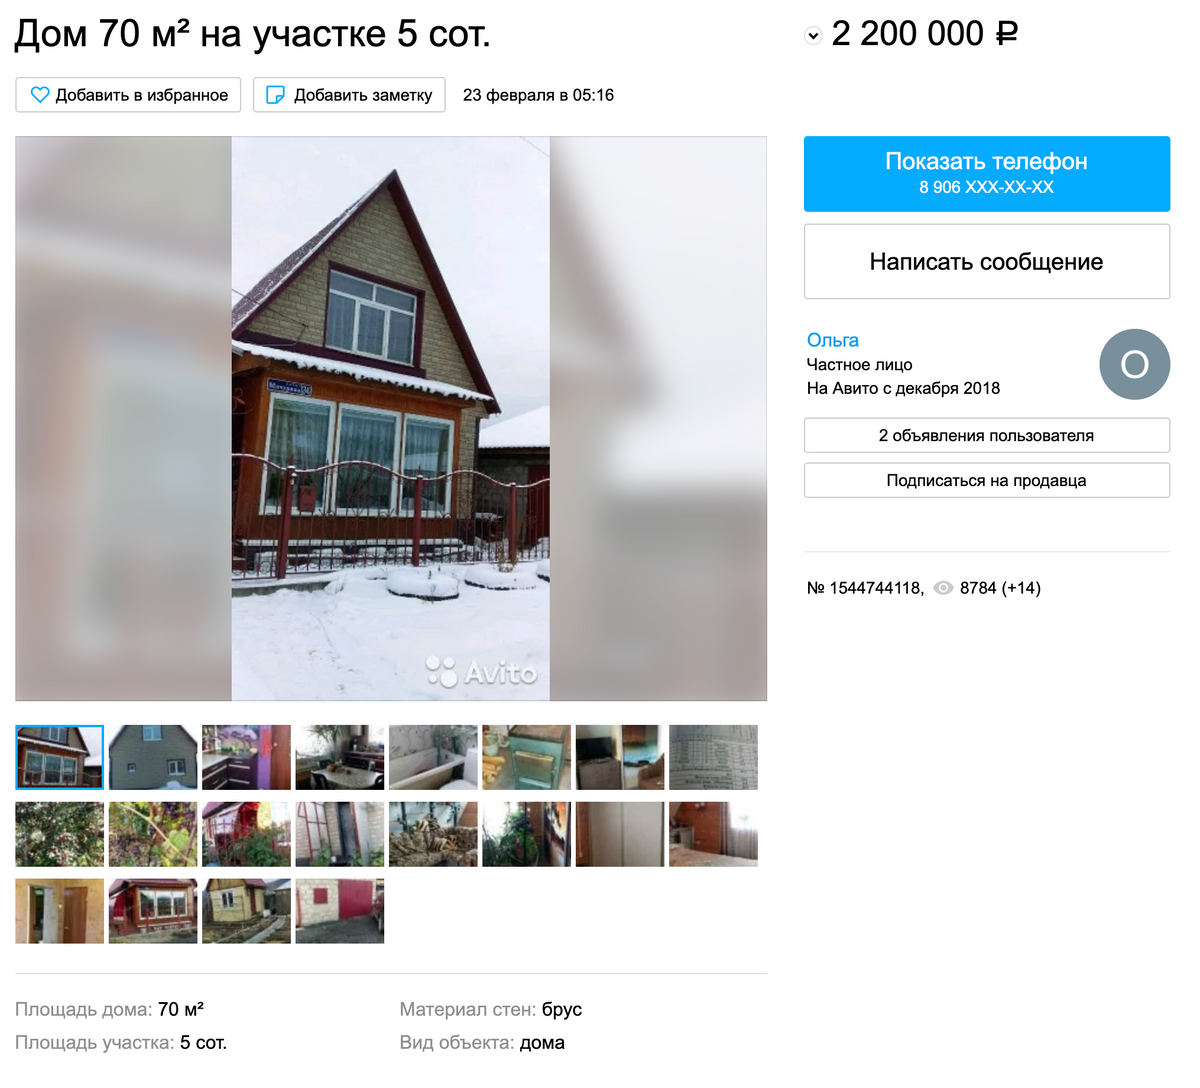 Двухэтажный дом с центральным отоплением недалеко от железнодорожного вокзала: 33 тысячи рублей за квадратный метр